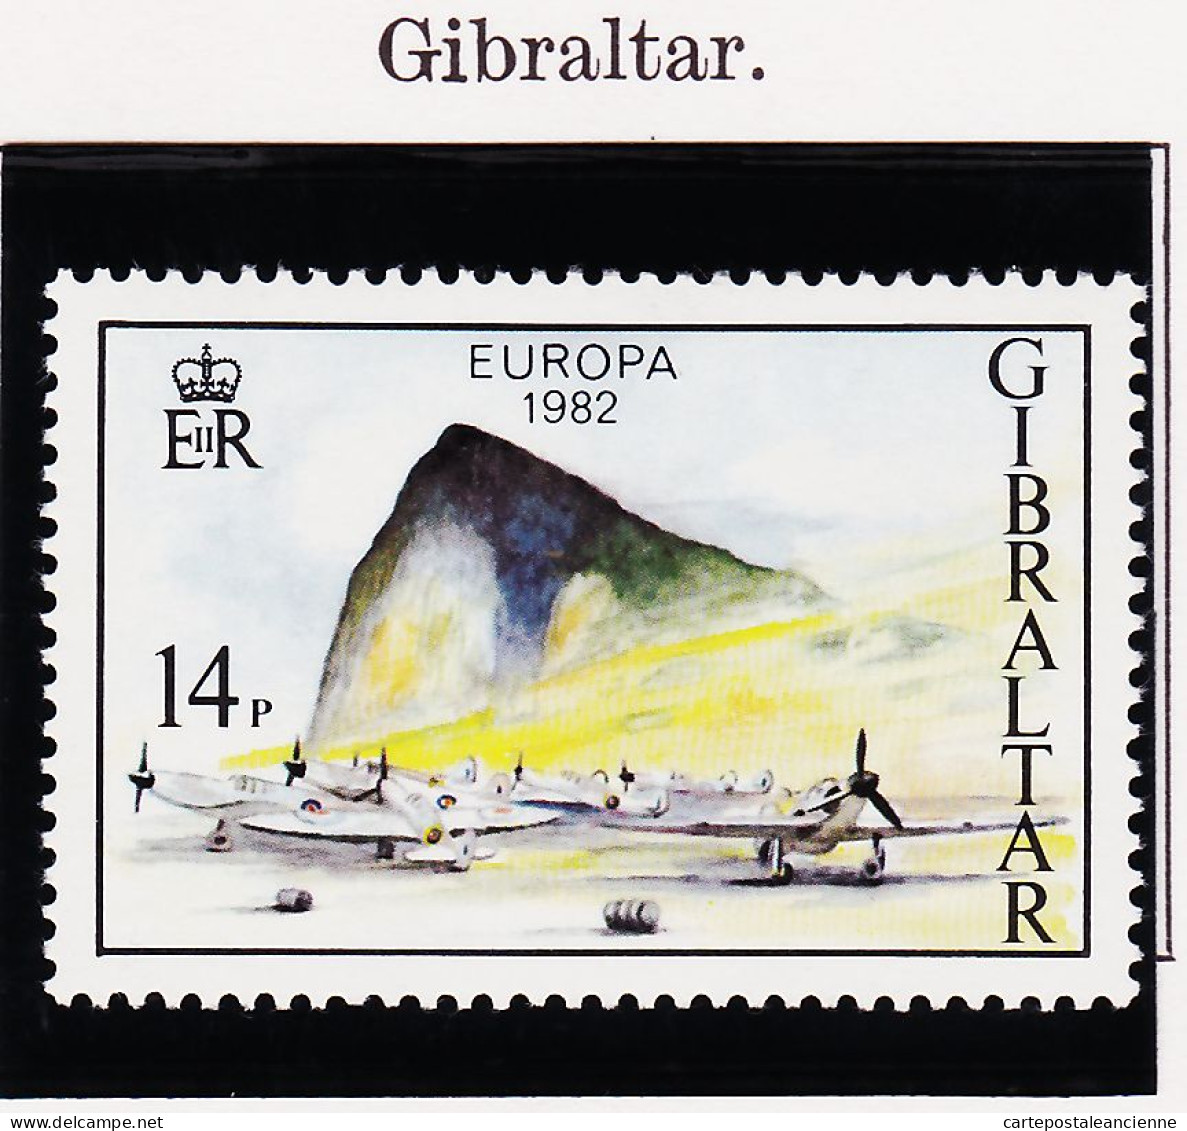 28229 / EUROPA 1982 GIBRALTAR 14 P.  Yvert-Tellier N° 458 Michel N° 451  ** MNH  - 1982